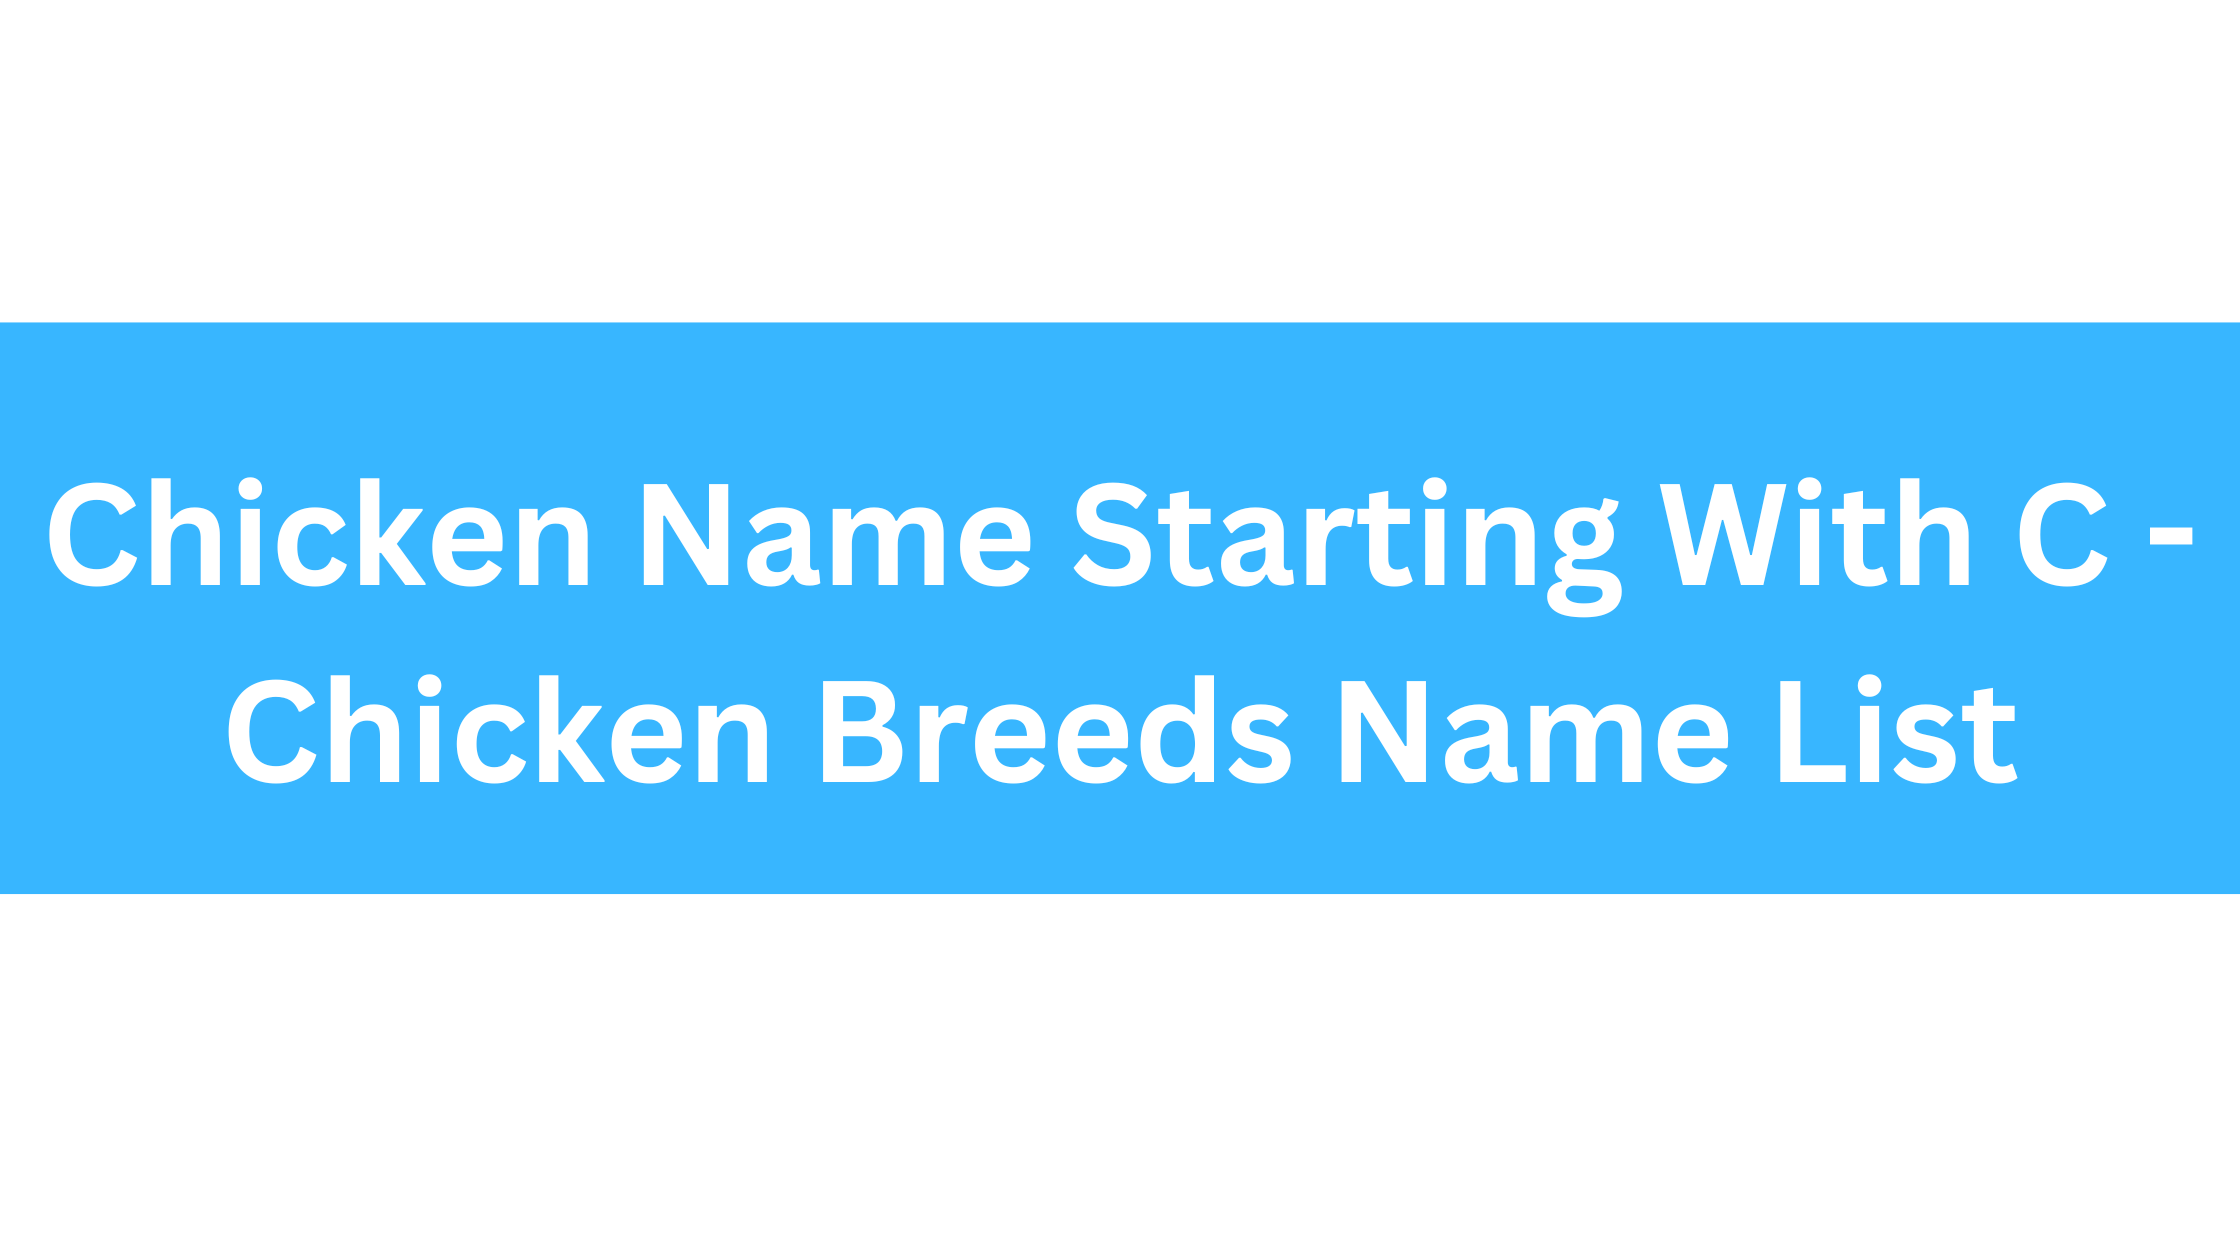 Chicken Breeds That Start With C